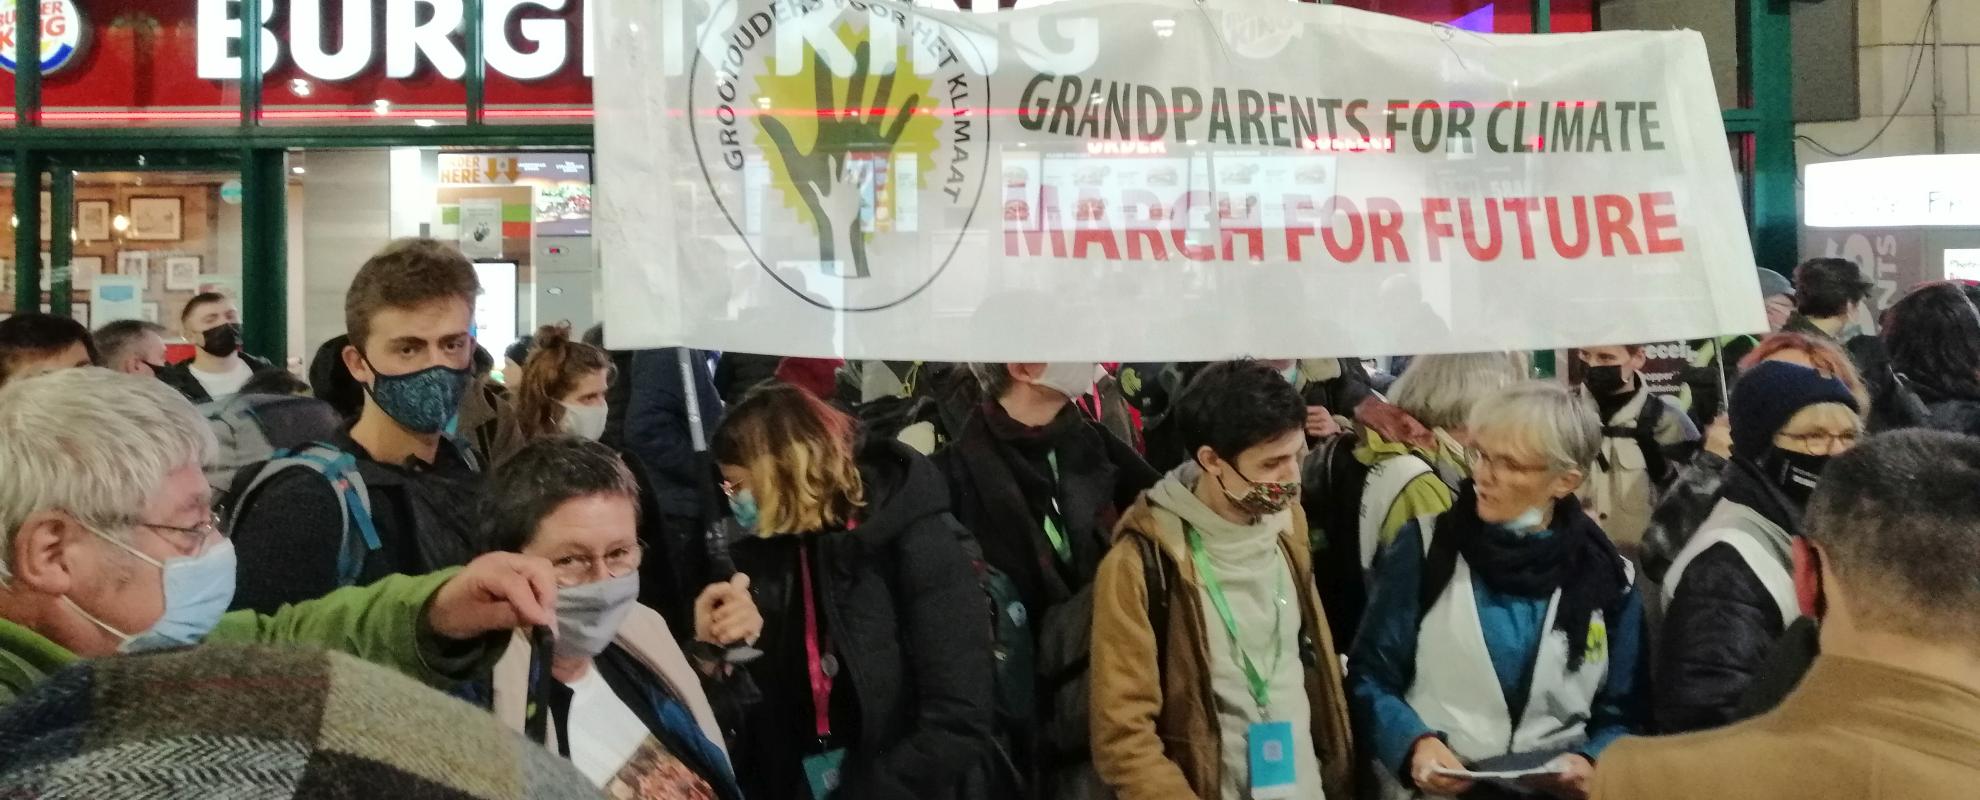 Grootouders voor het klimaat in Brussel voor een manifestatie